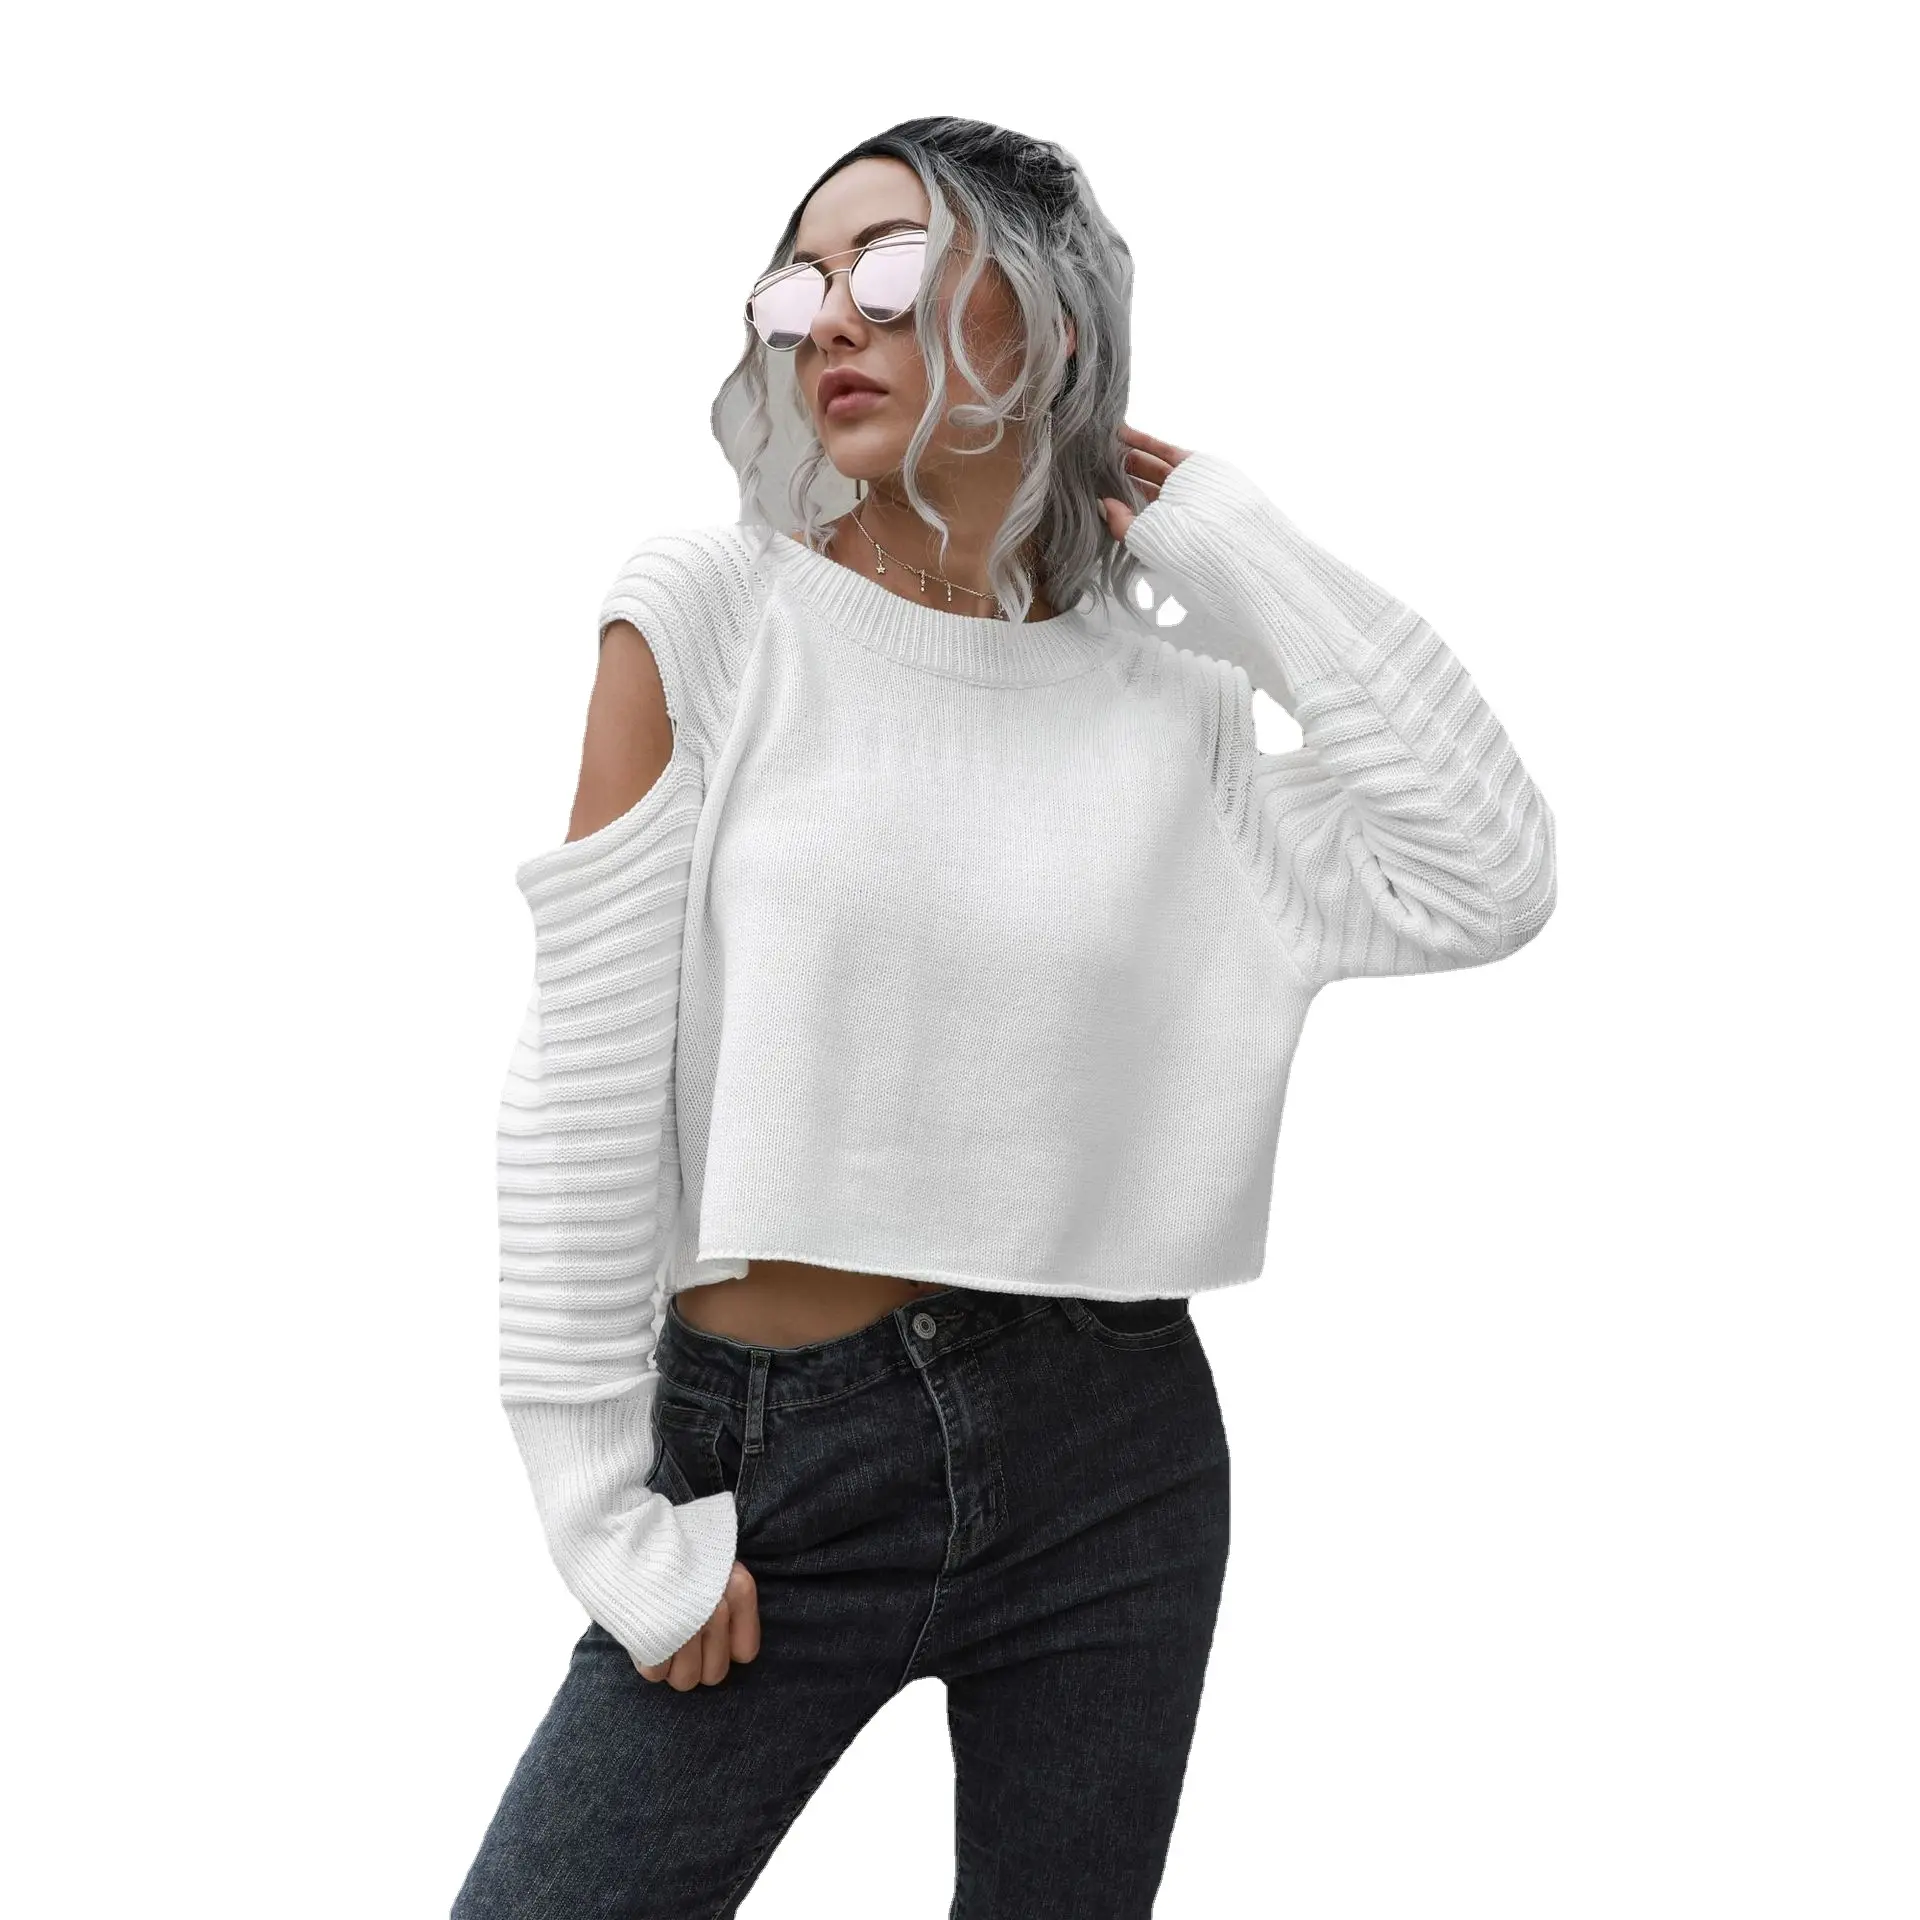 Женский короткий топ с вырезами на плечах, черный и белый цвет, свитера для женщин, дизайнерская блузка с вышивкой, Свободный вязаный свитер